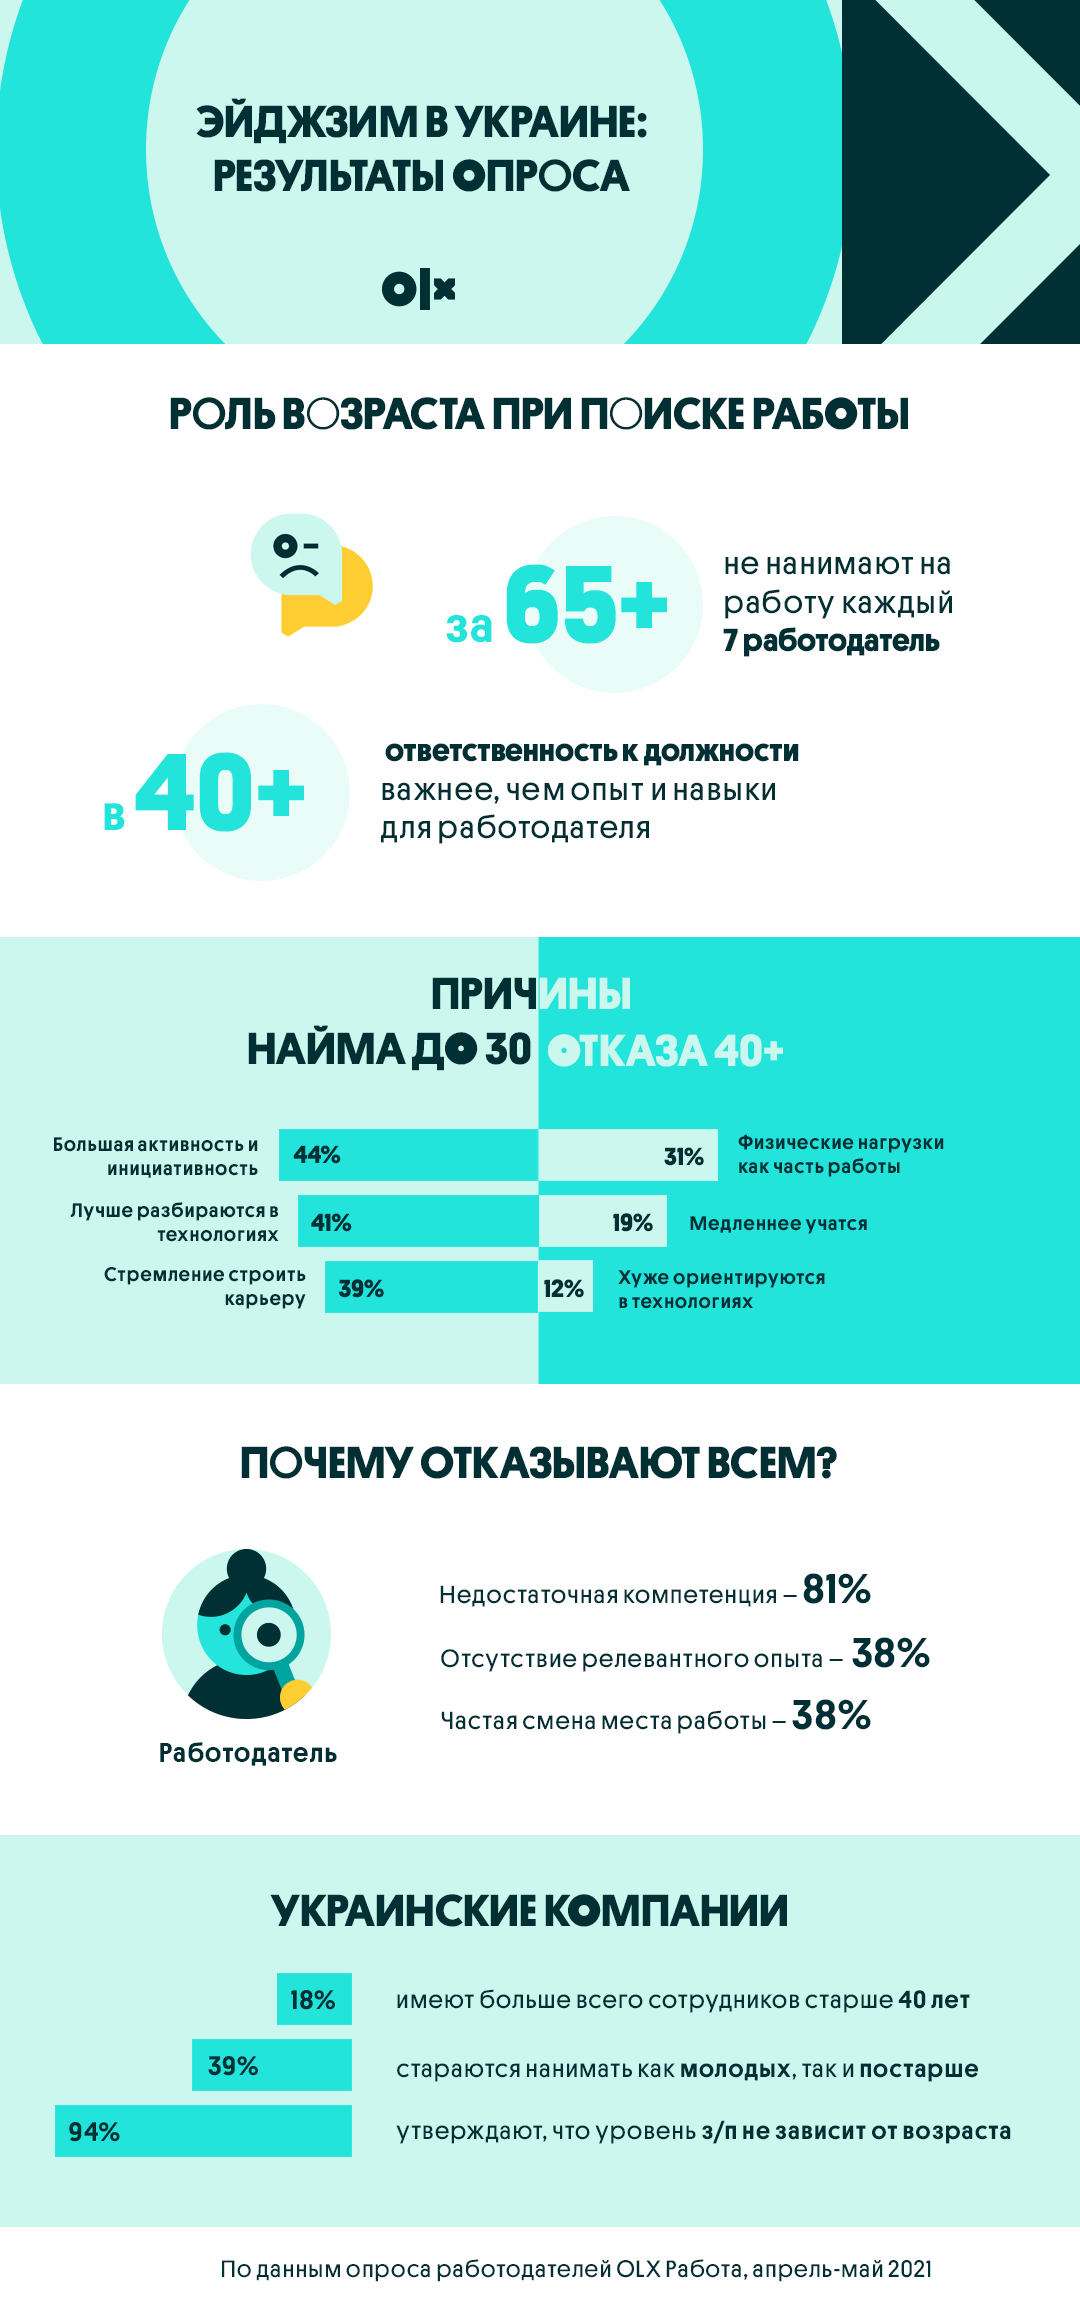 Эйджзим в Украине: работников старше 65 лет не нанимает каждый седьмой работодатель, а только у 18% в штате сотрудники 40+